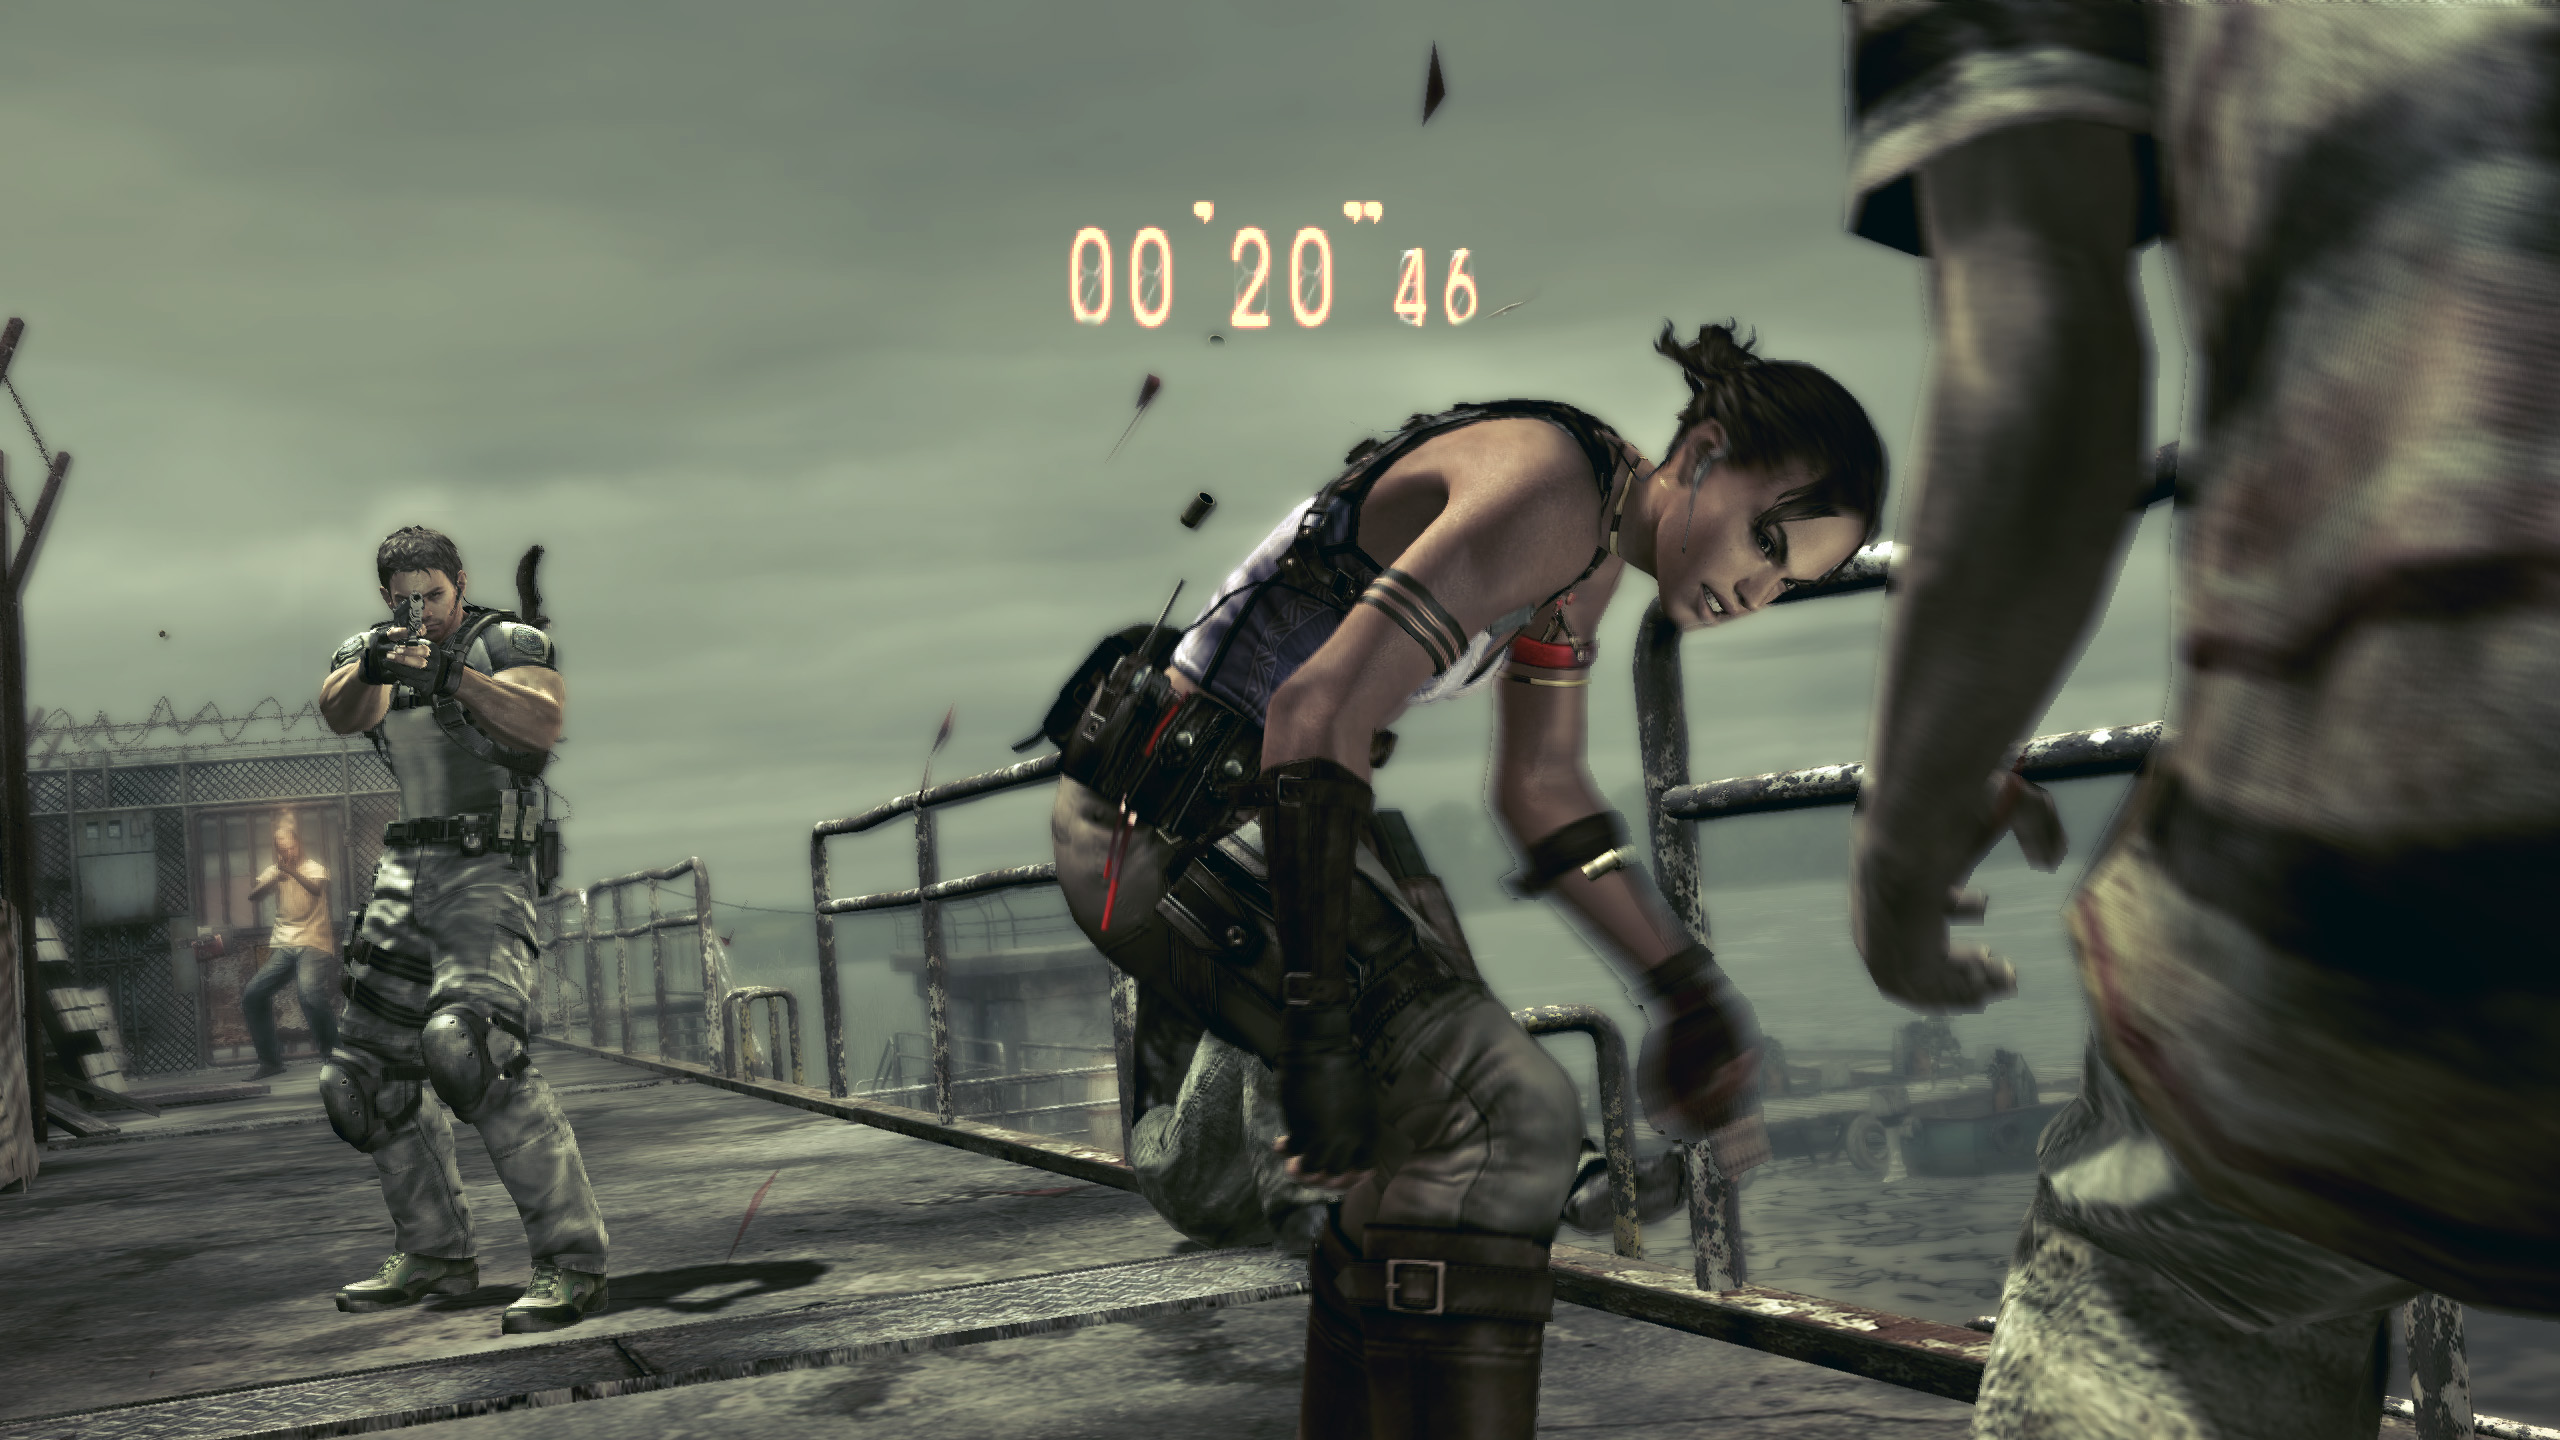 Vocês acham que Resident Evil 5 e 6 precisam de Remake? : r/gamesEcultura